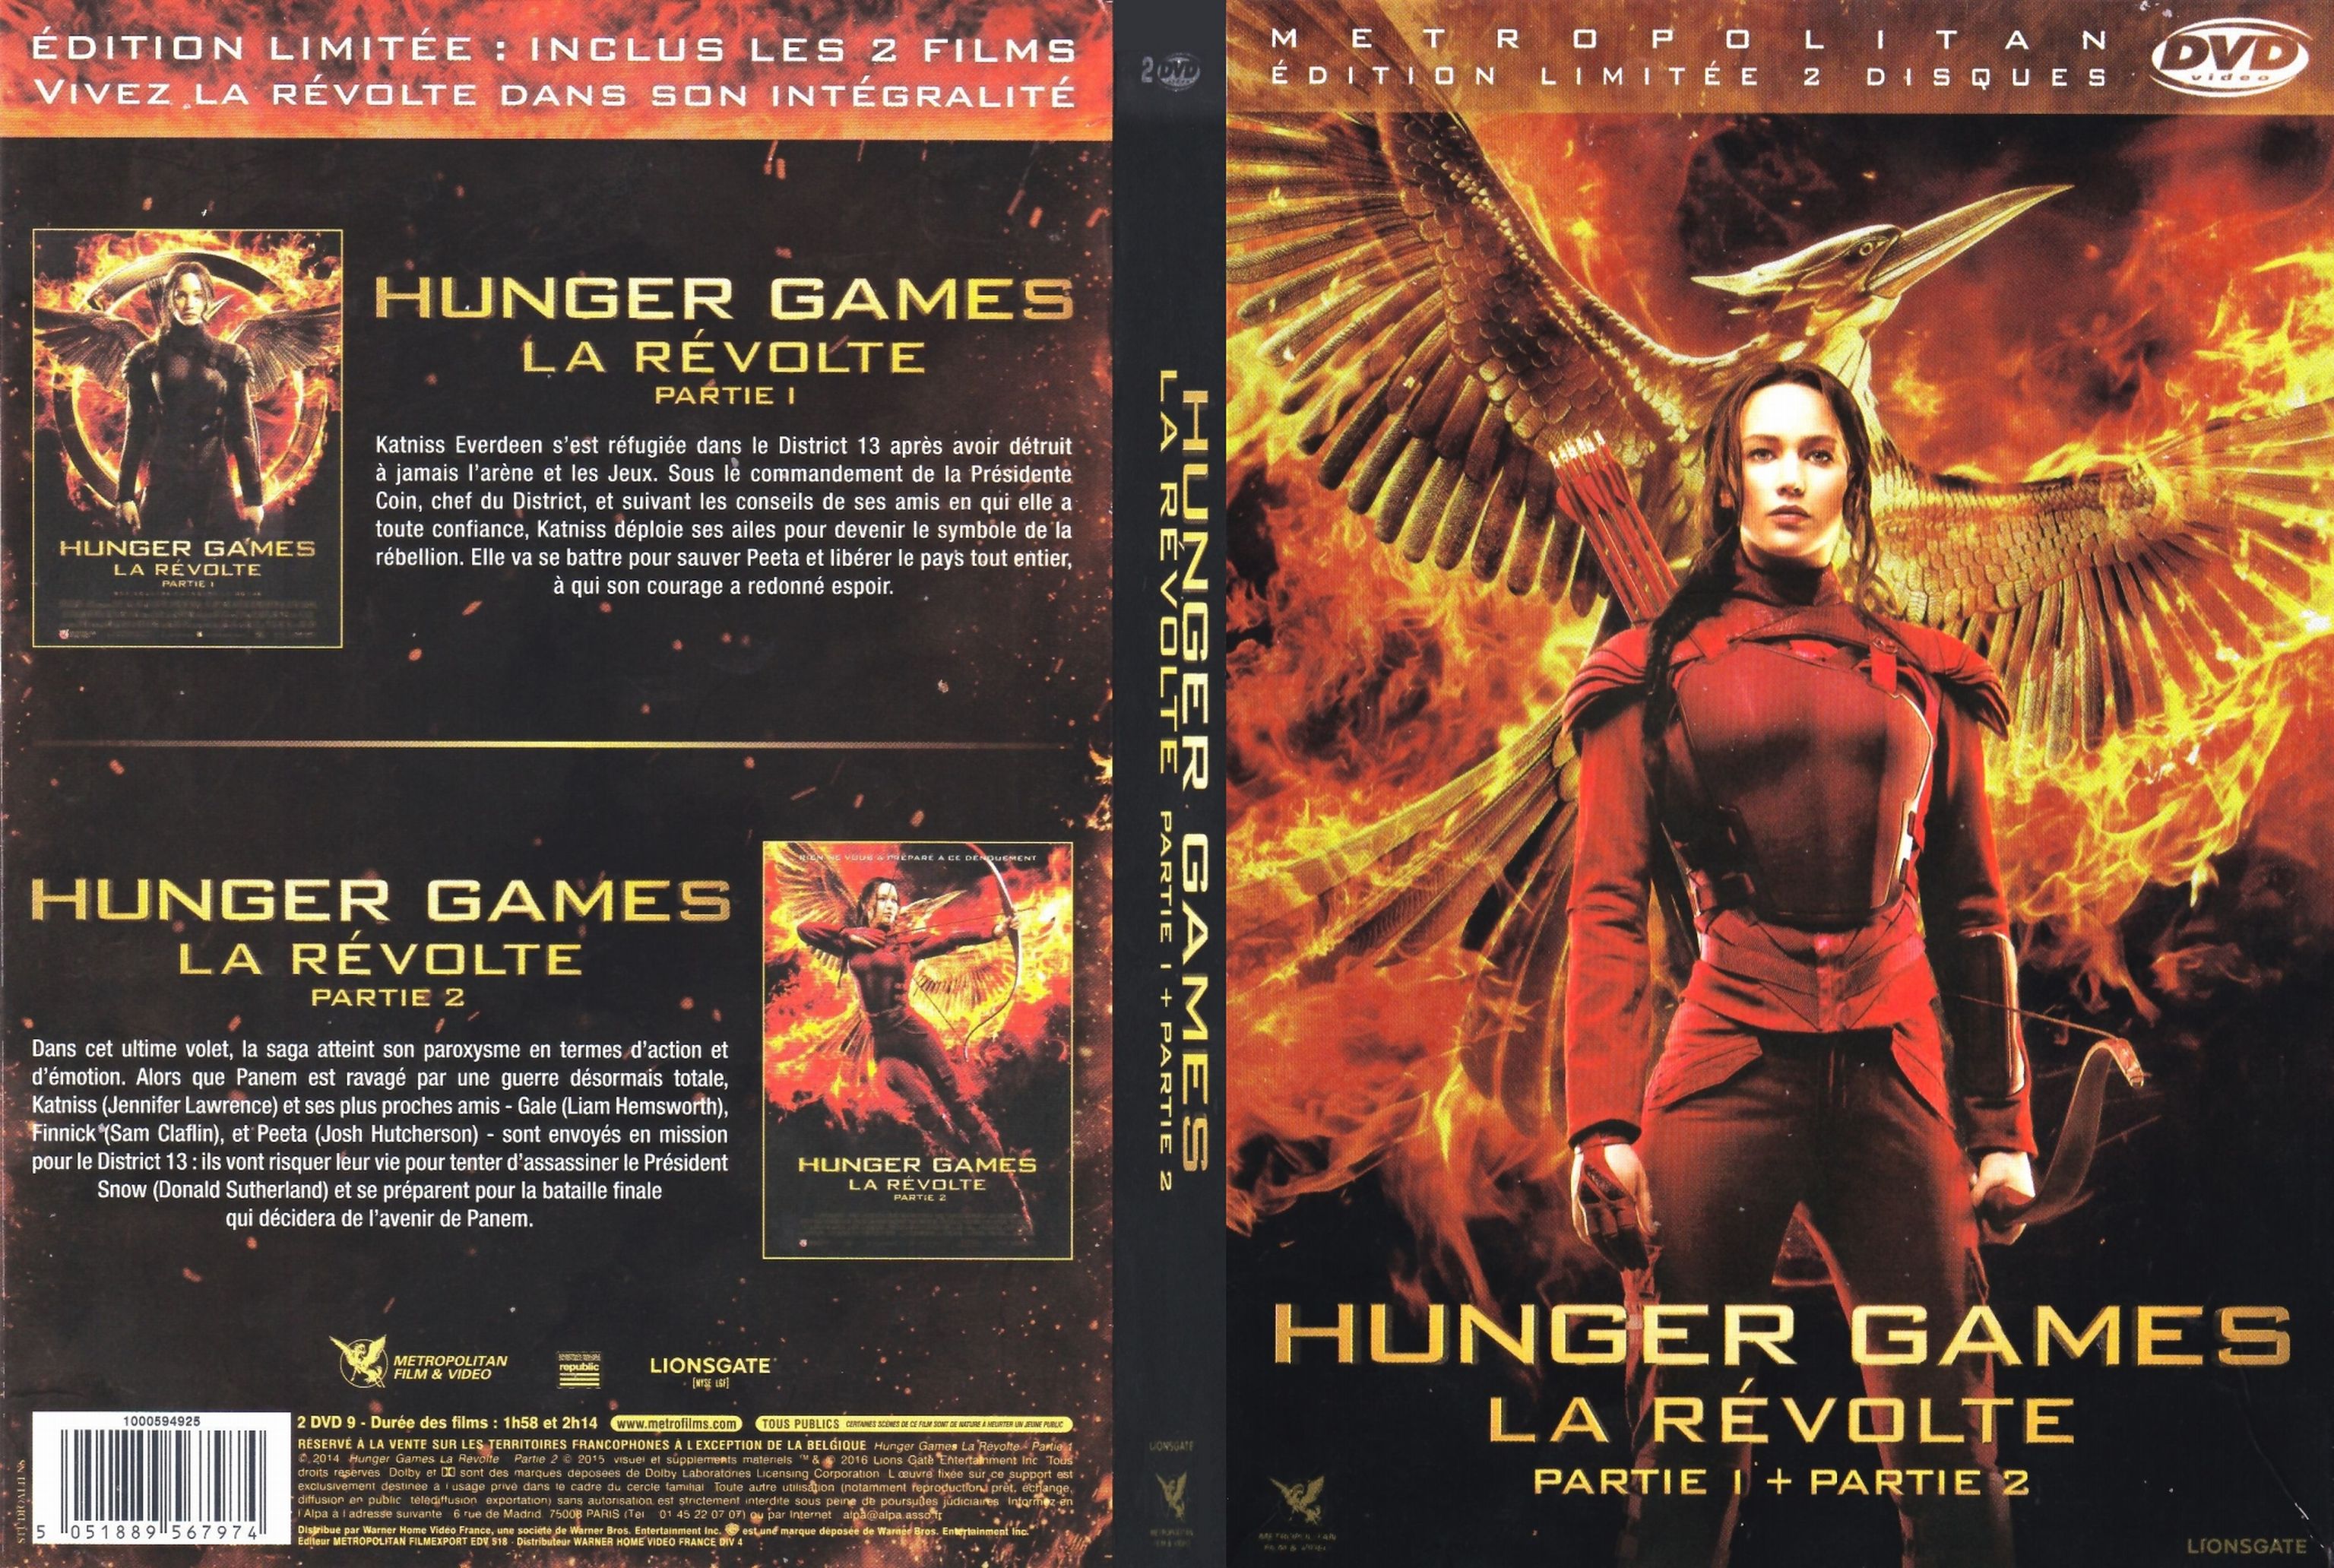 Jaquette DVD Hunger Games La Revolte (partie 1 & 2)